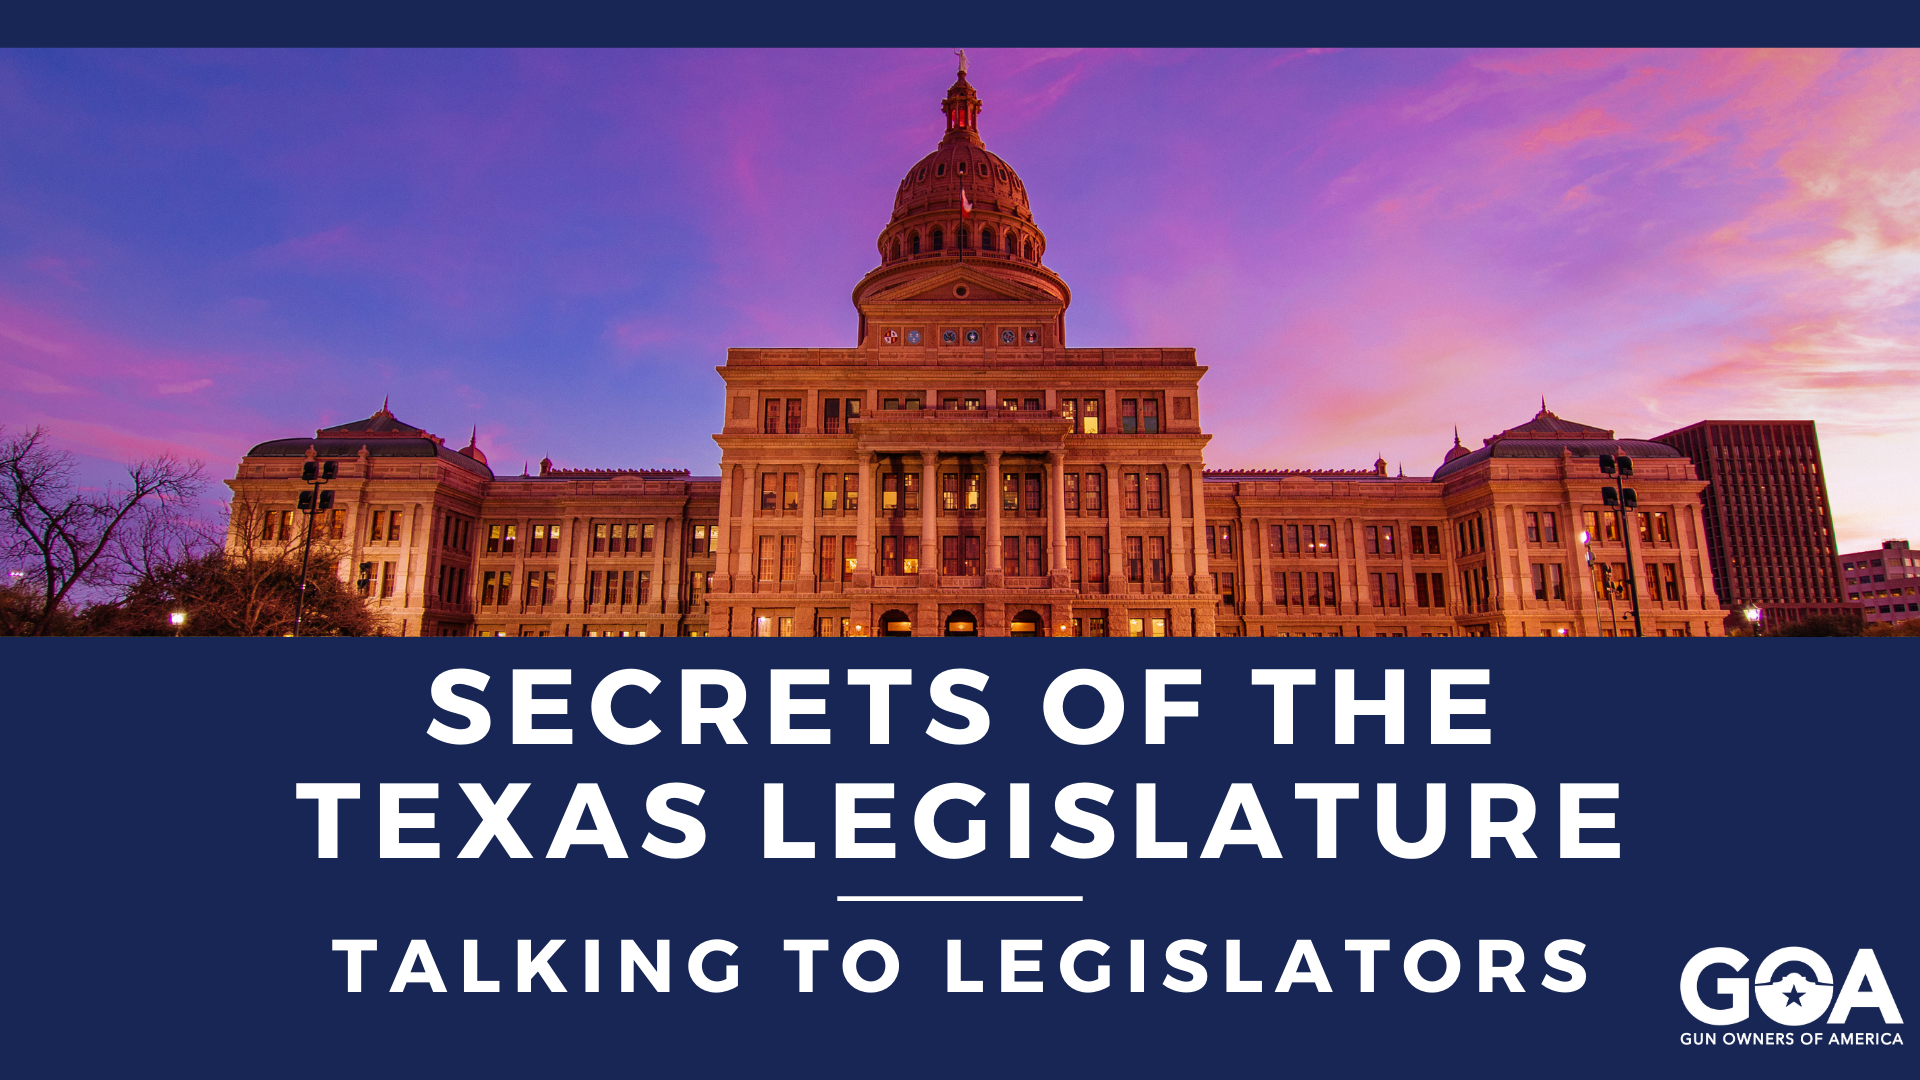 Secrets of the Texas Legislature Talking to Legislators GOA Texas